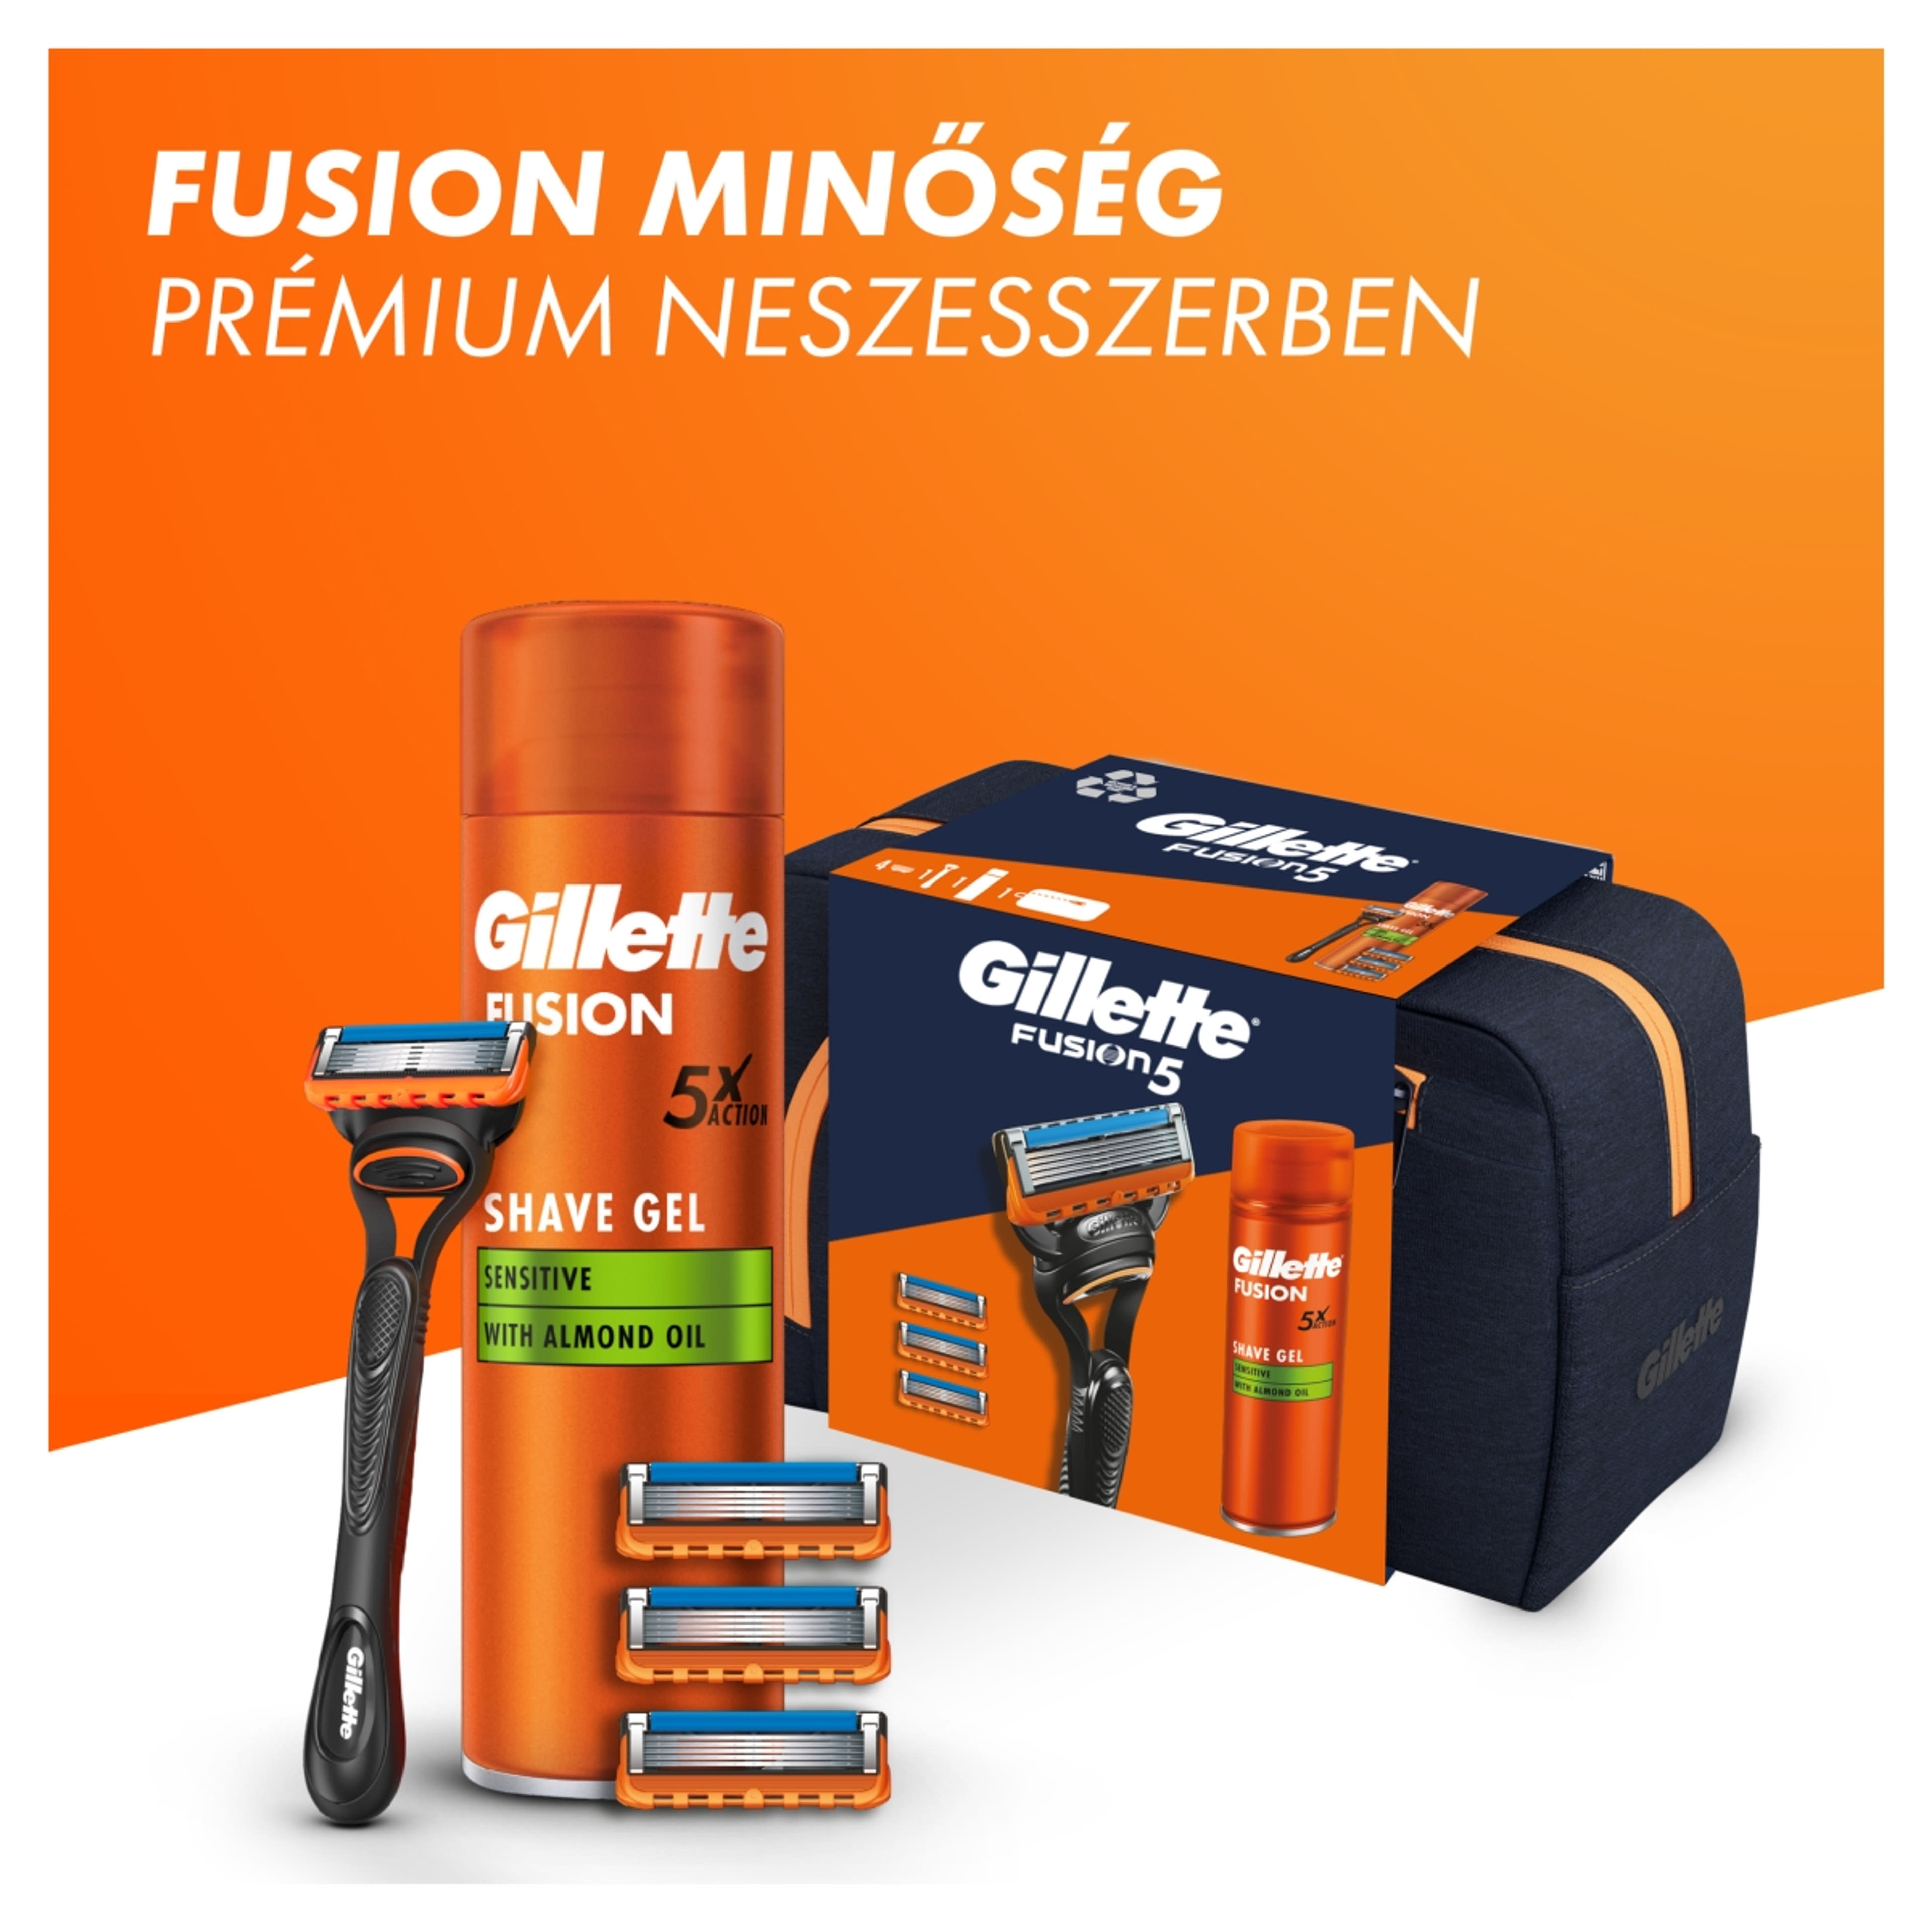 Gillette Fusion Borotva és Fusion borotvazselé ajándékcsomag neszesszerrel - 1 db-2